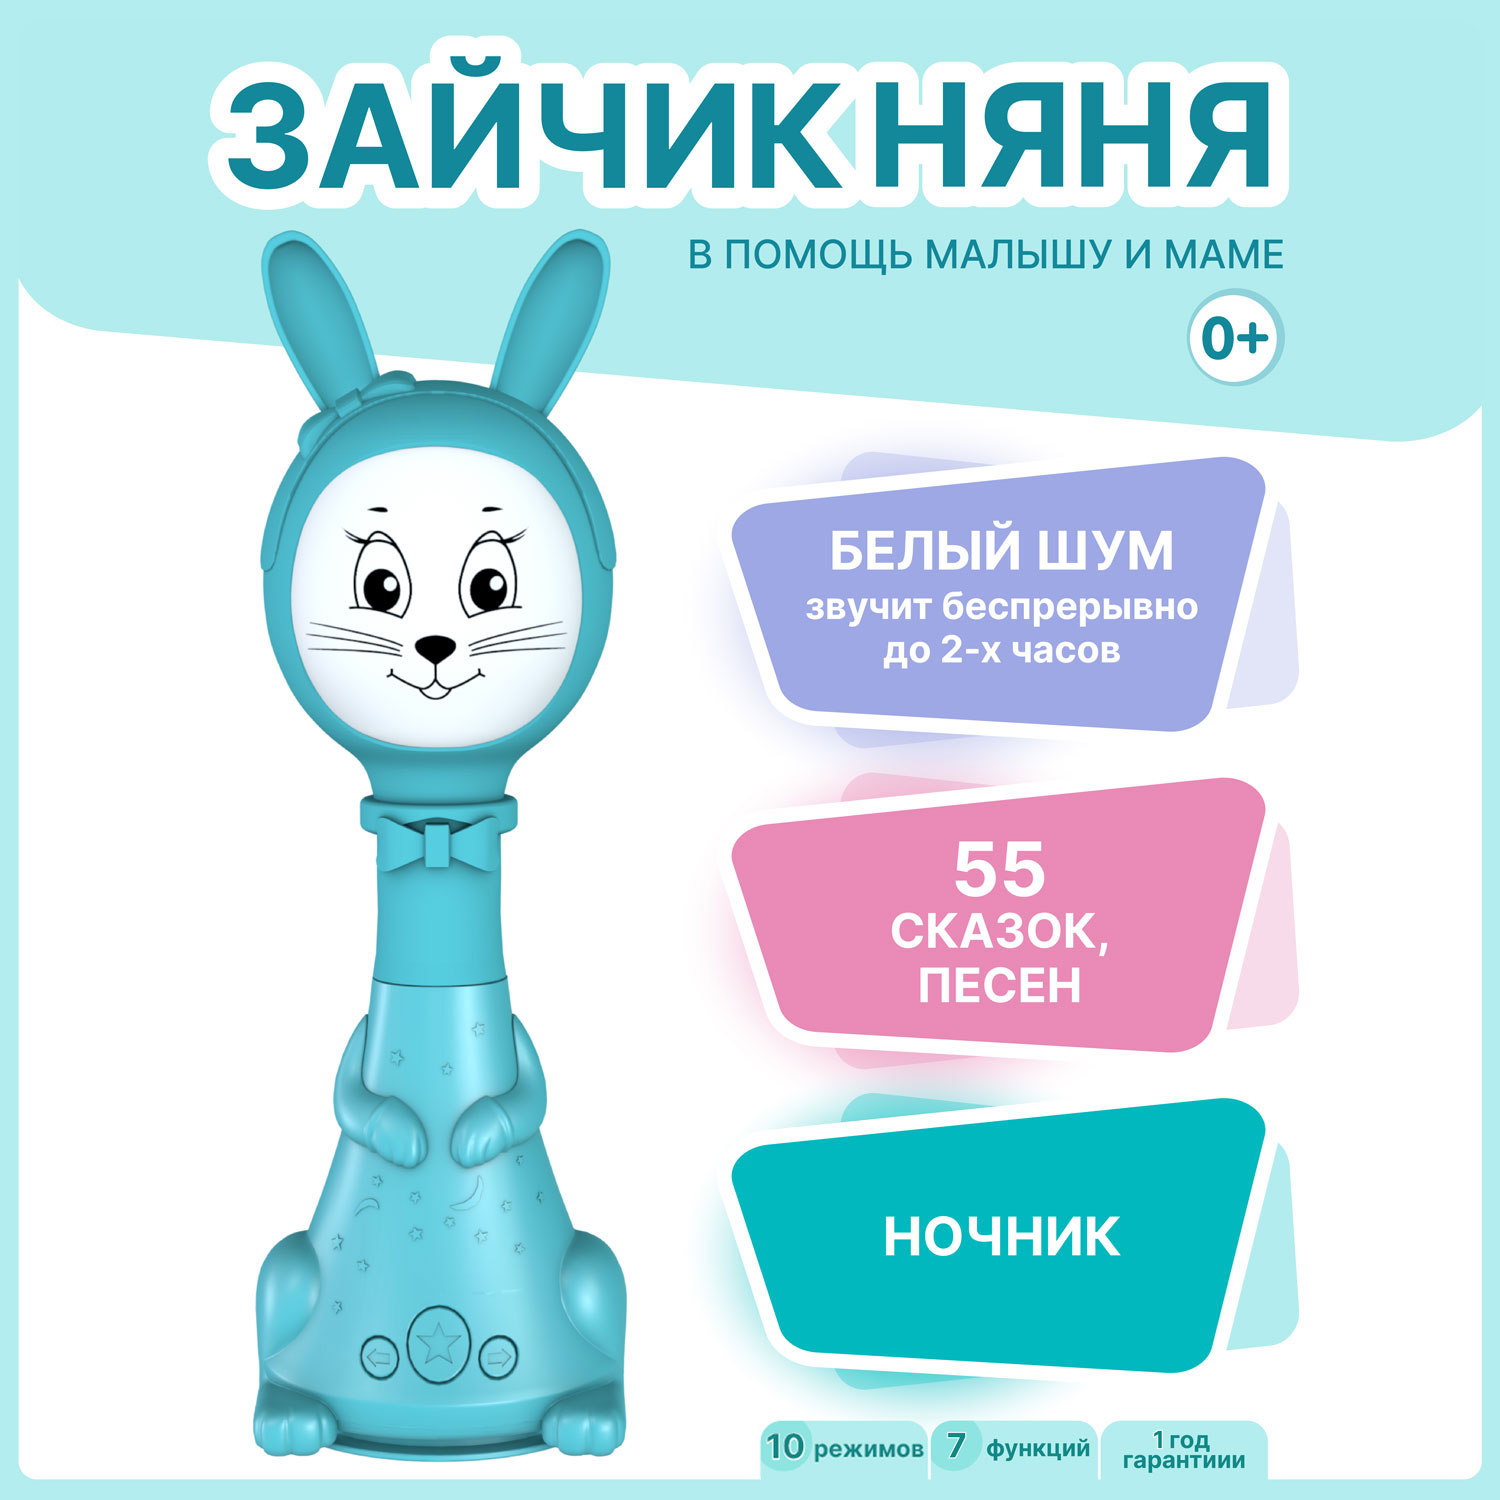 Интерактивная развивающая игрушка для малышей BertToys Зайчик Няня FD125/Голубой happy snail развивающая игрушка помощник зайка